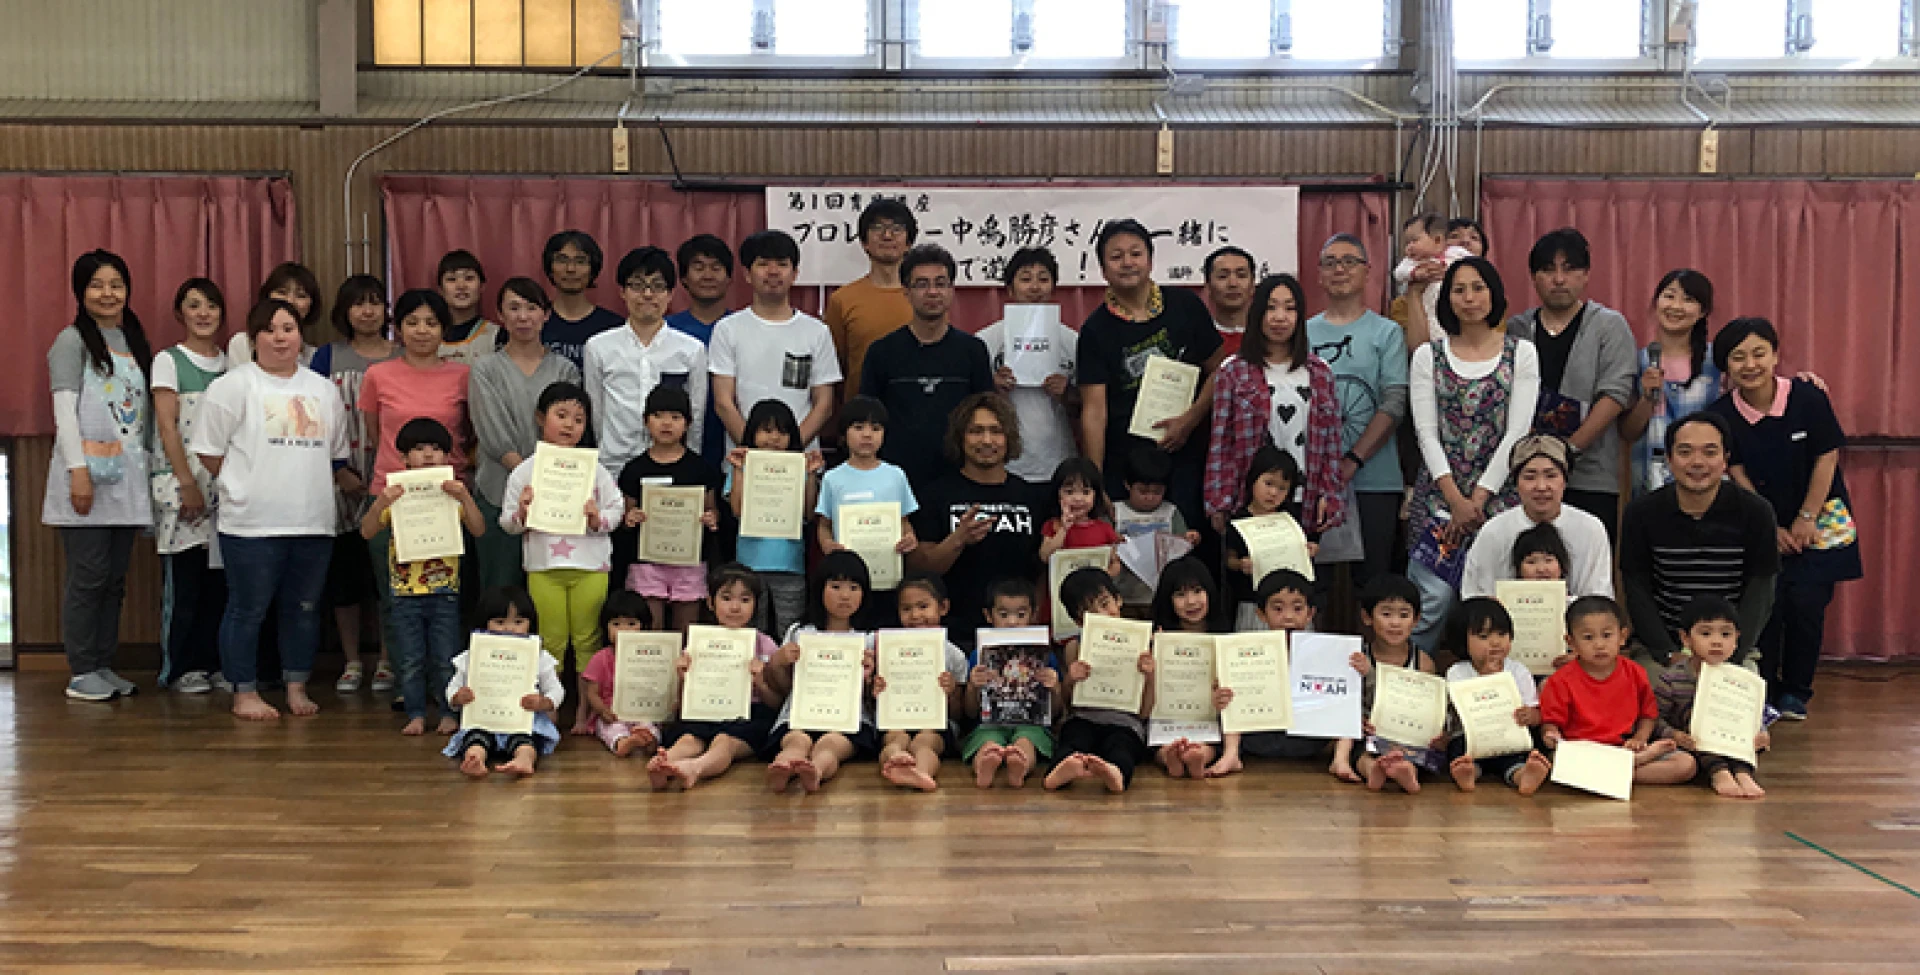 【イベント報告】中嶋勝彦選手が千葉県柏市で育児講座の講師をつとめました